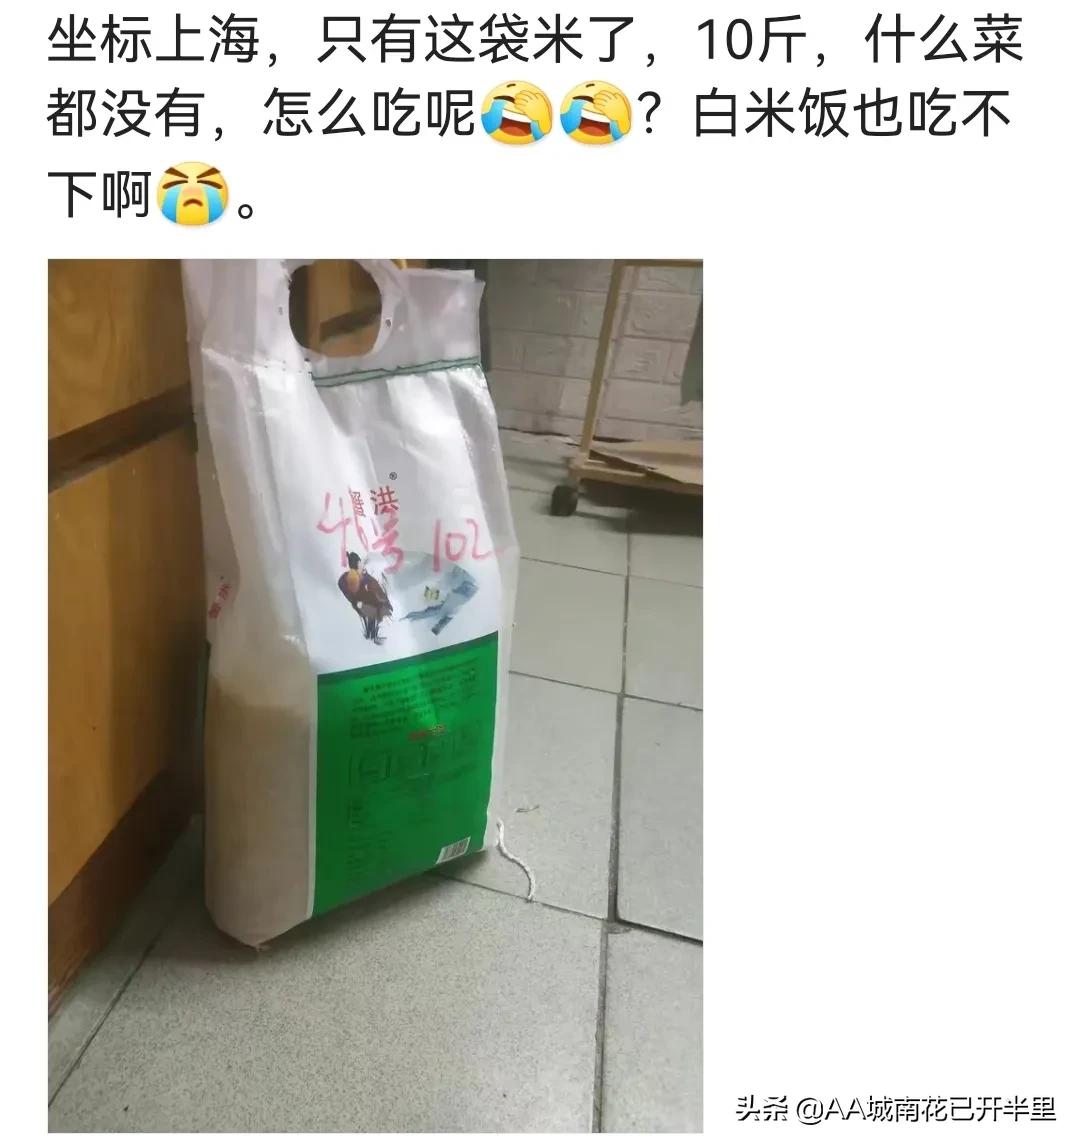 疫情上海小区：可乐可换万物，烟酒属硬通货，鸡蛋面粉持续见涨